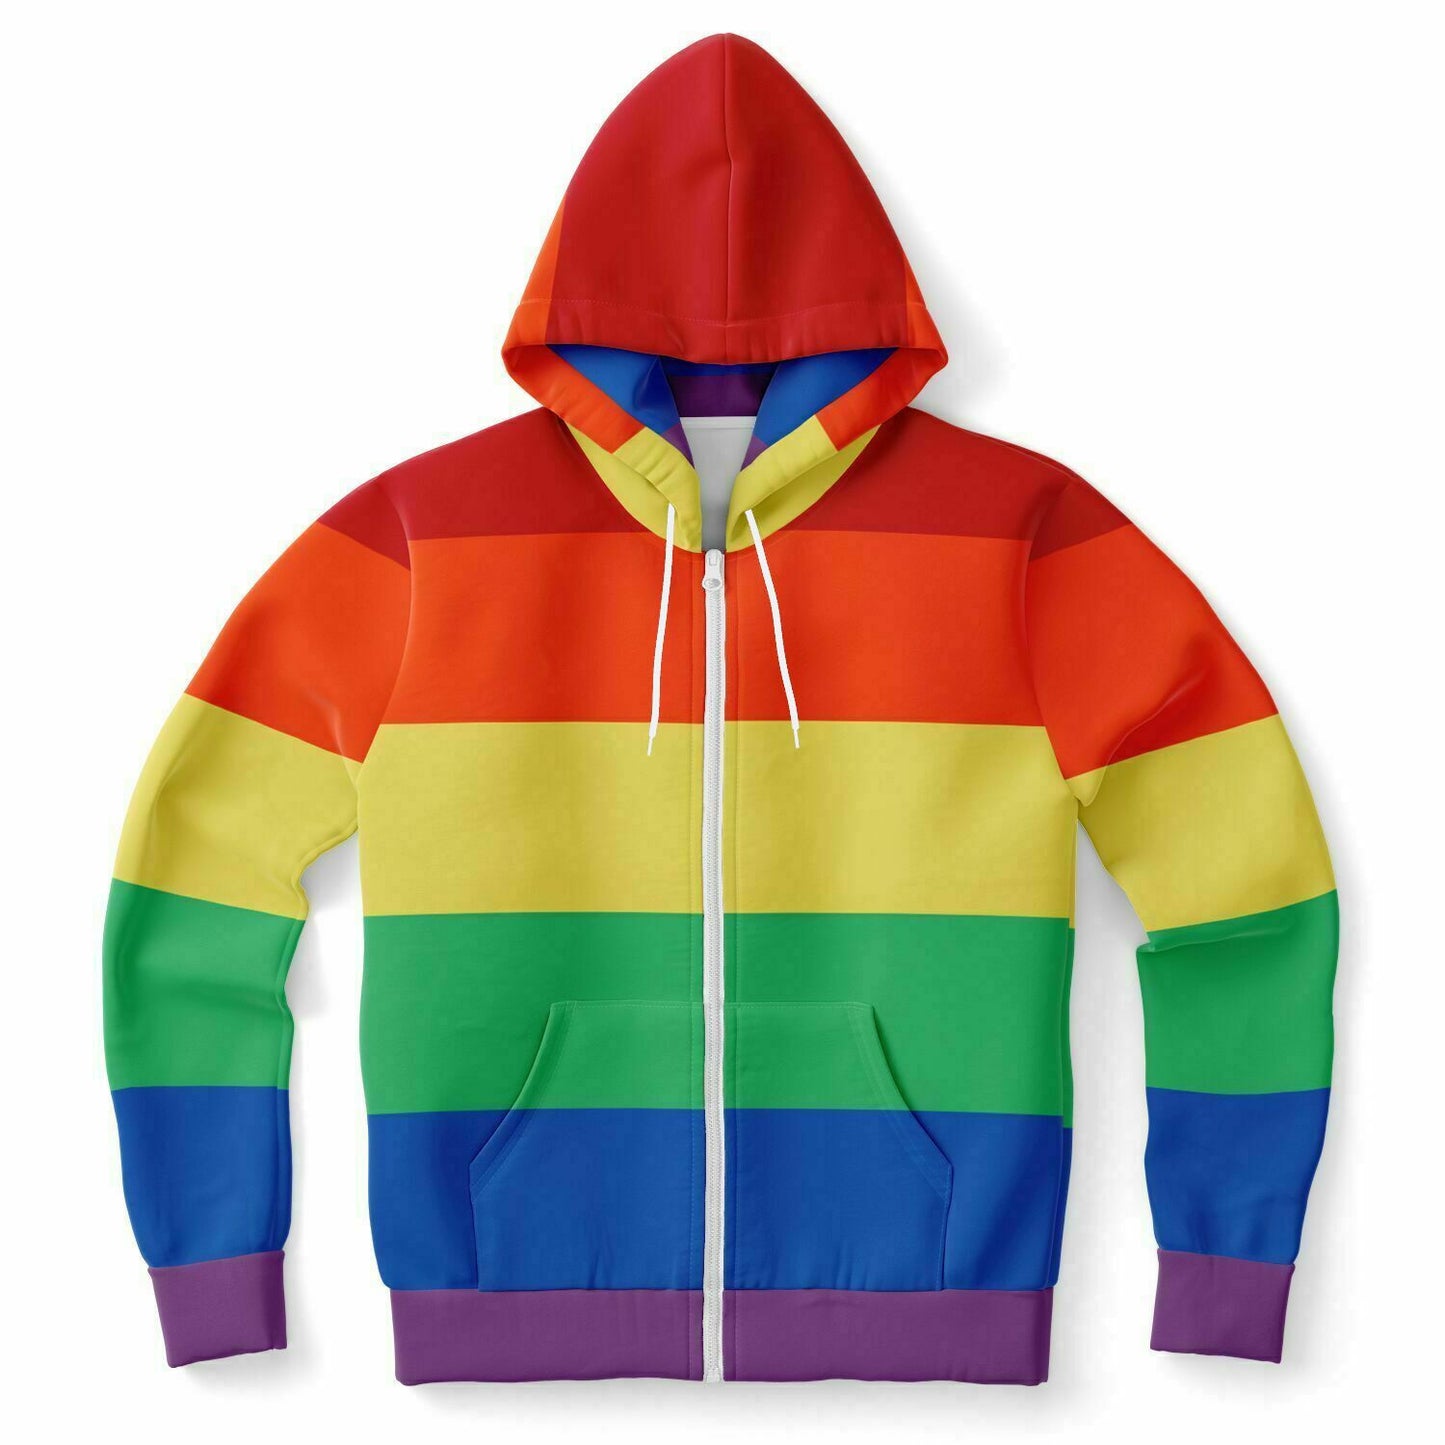 Rainbow Striped Zip Up Hoodie, Front Zipper Pocket Men Women Pride Unisex Adult Aesthetic Graphic Cotton Fleece Hooded Sweatshirt